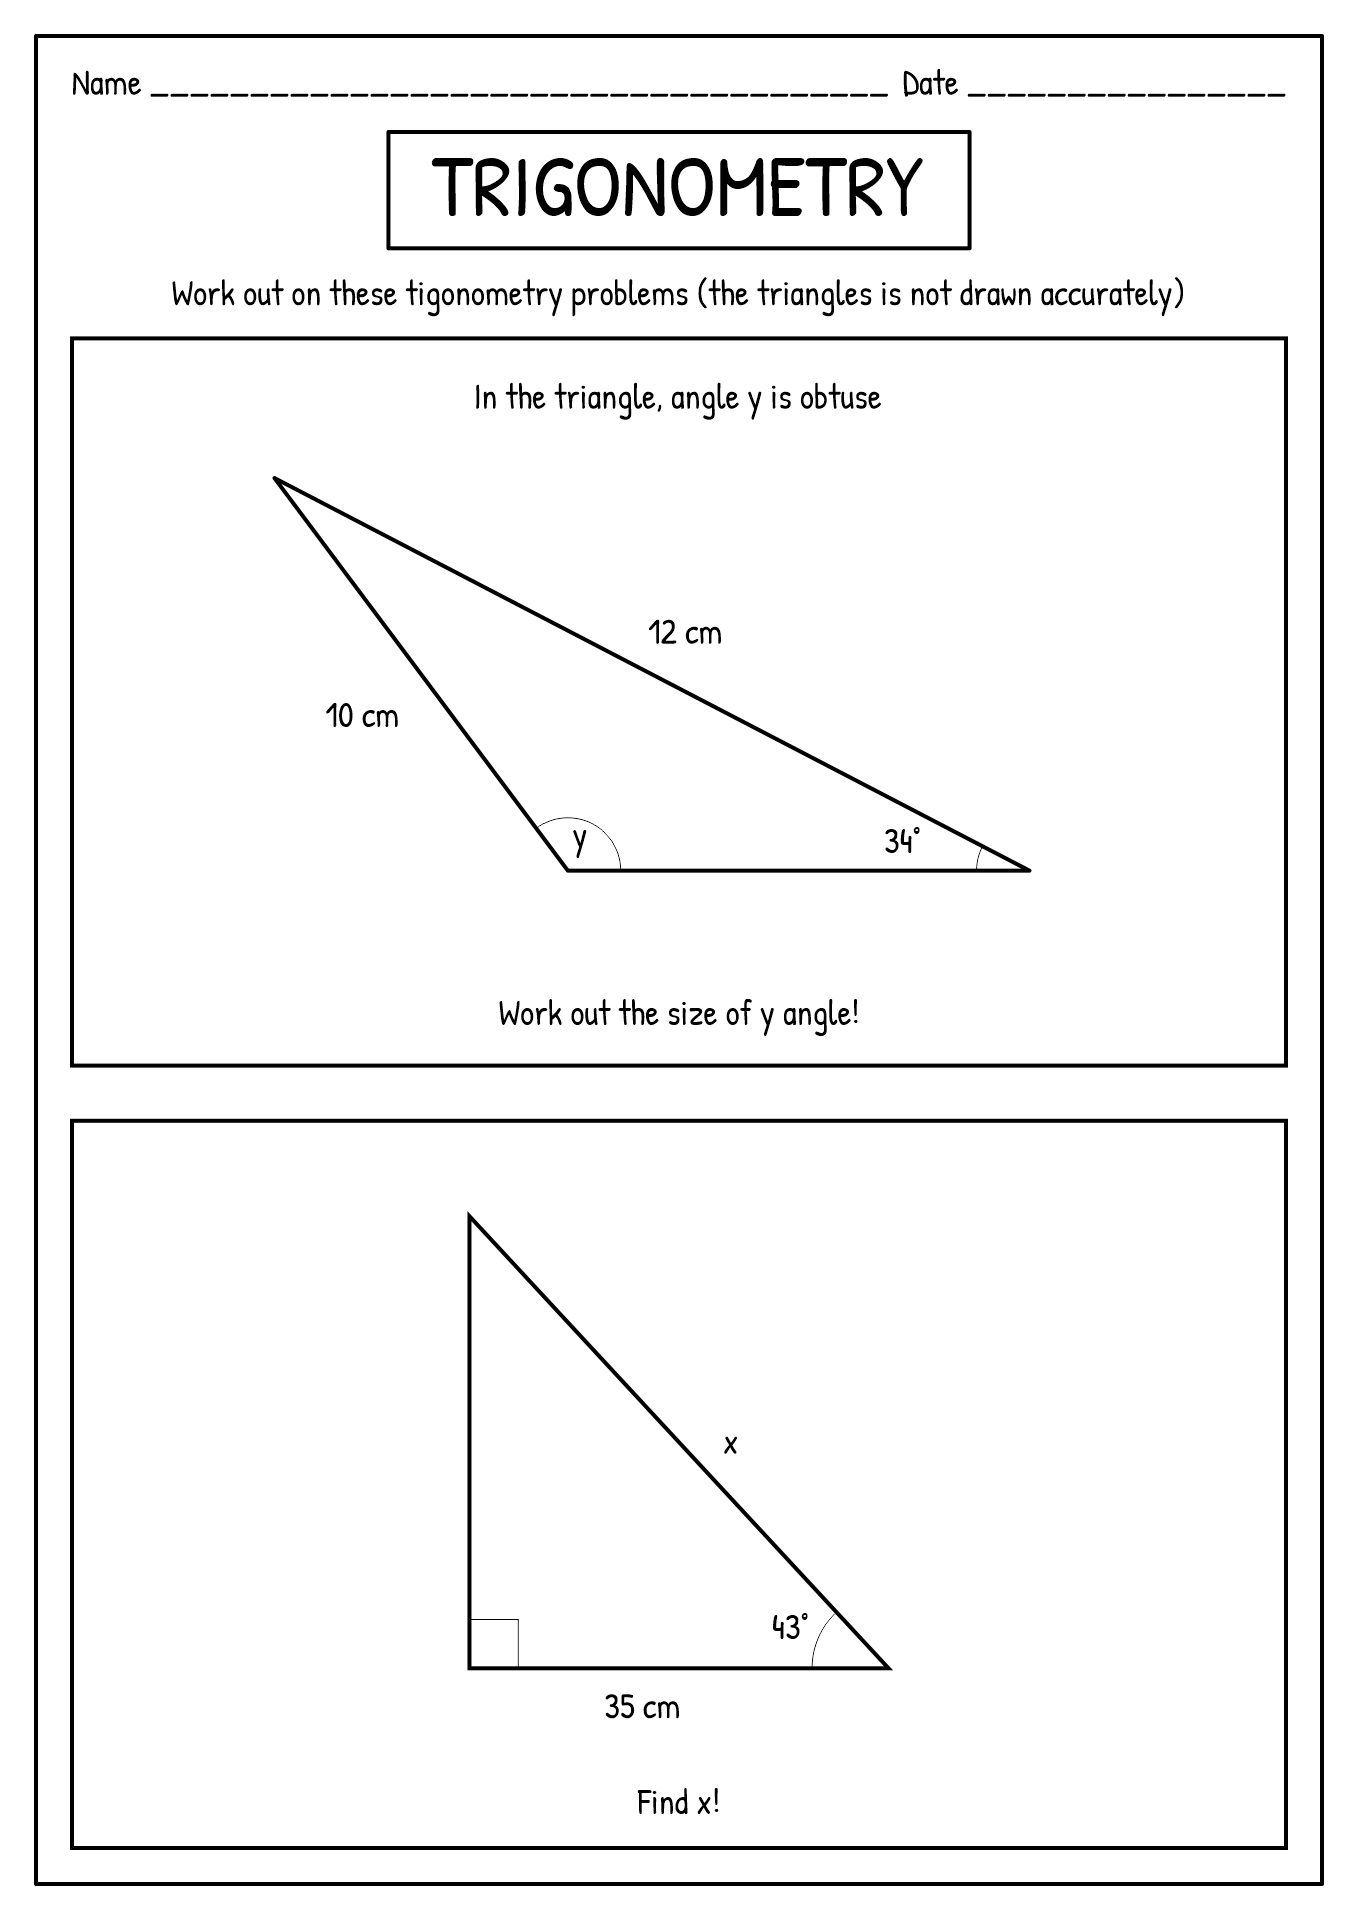 Trigonometry Exam Questions